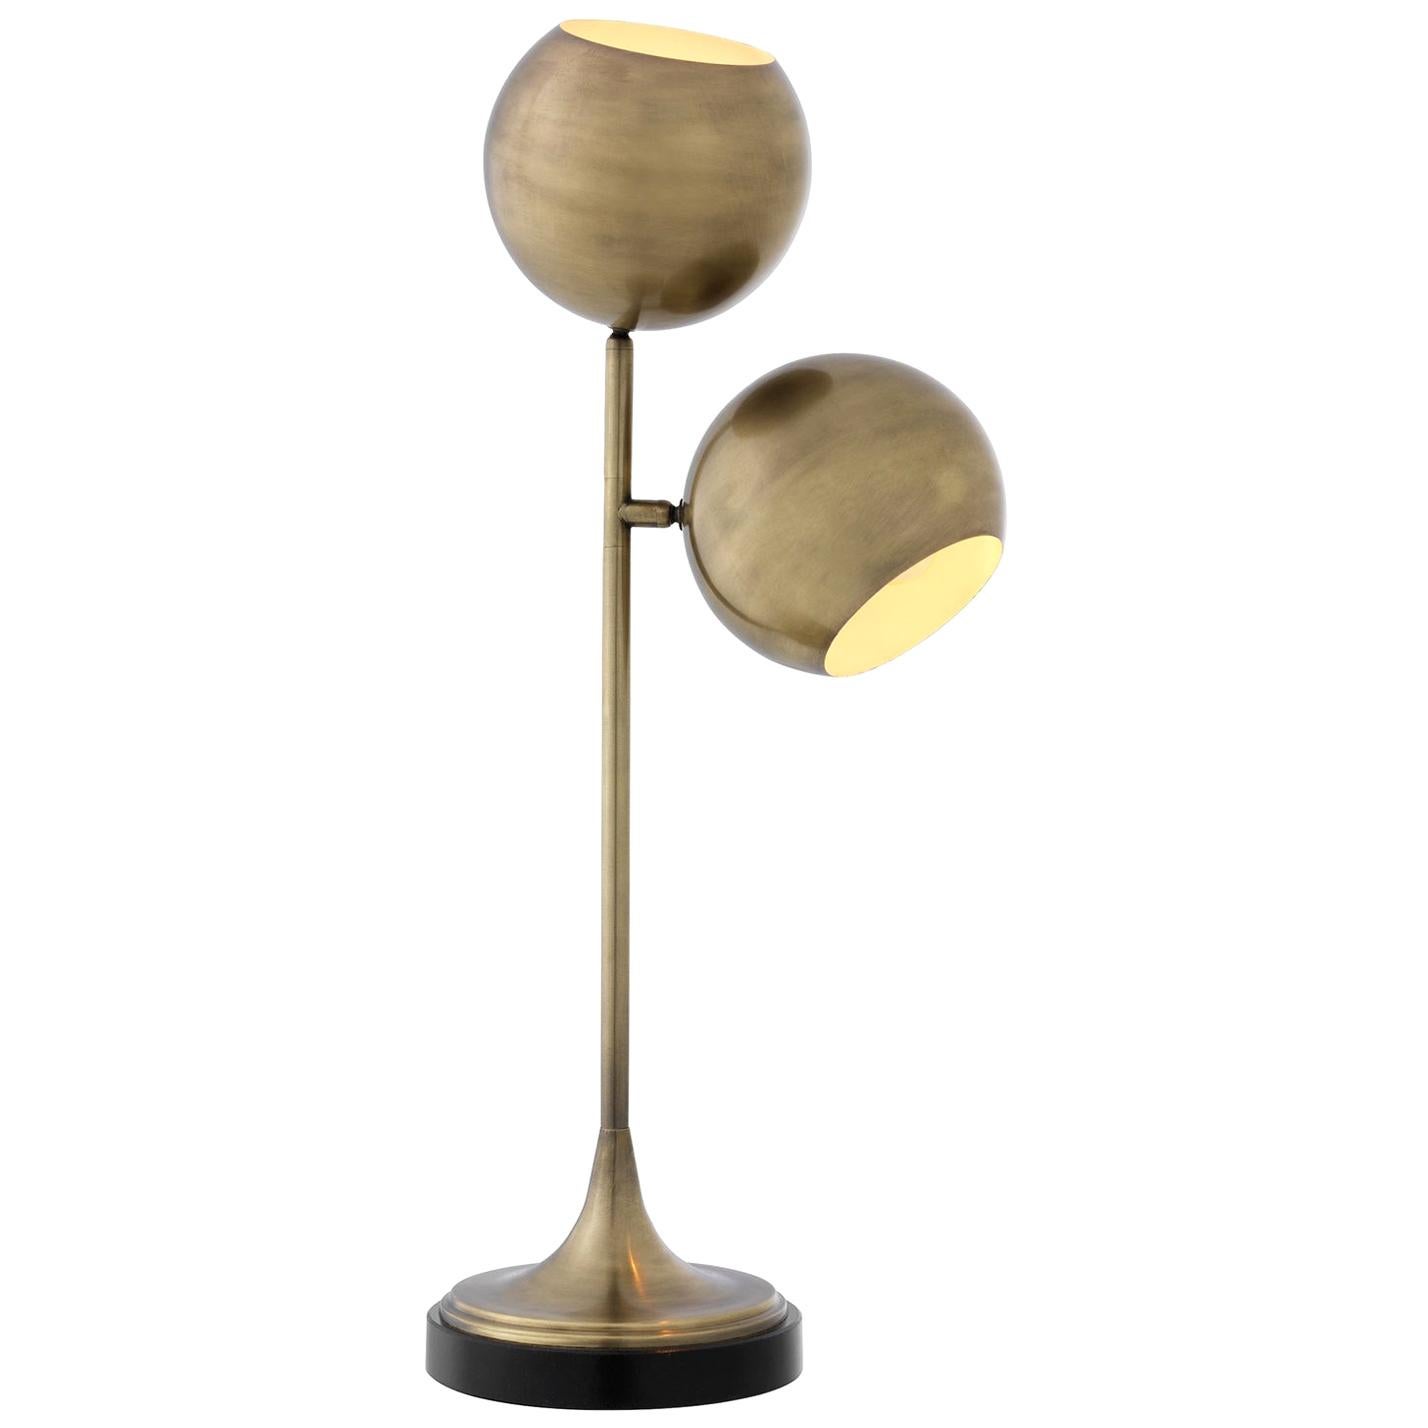 Lampe de table double en finition laiton ou nickel antique